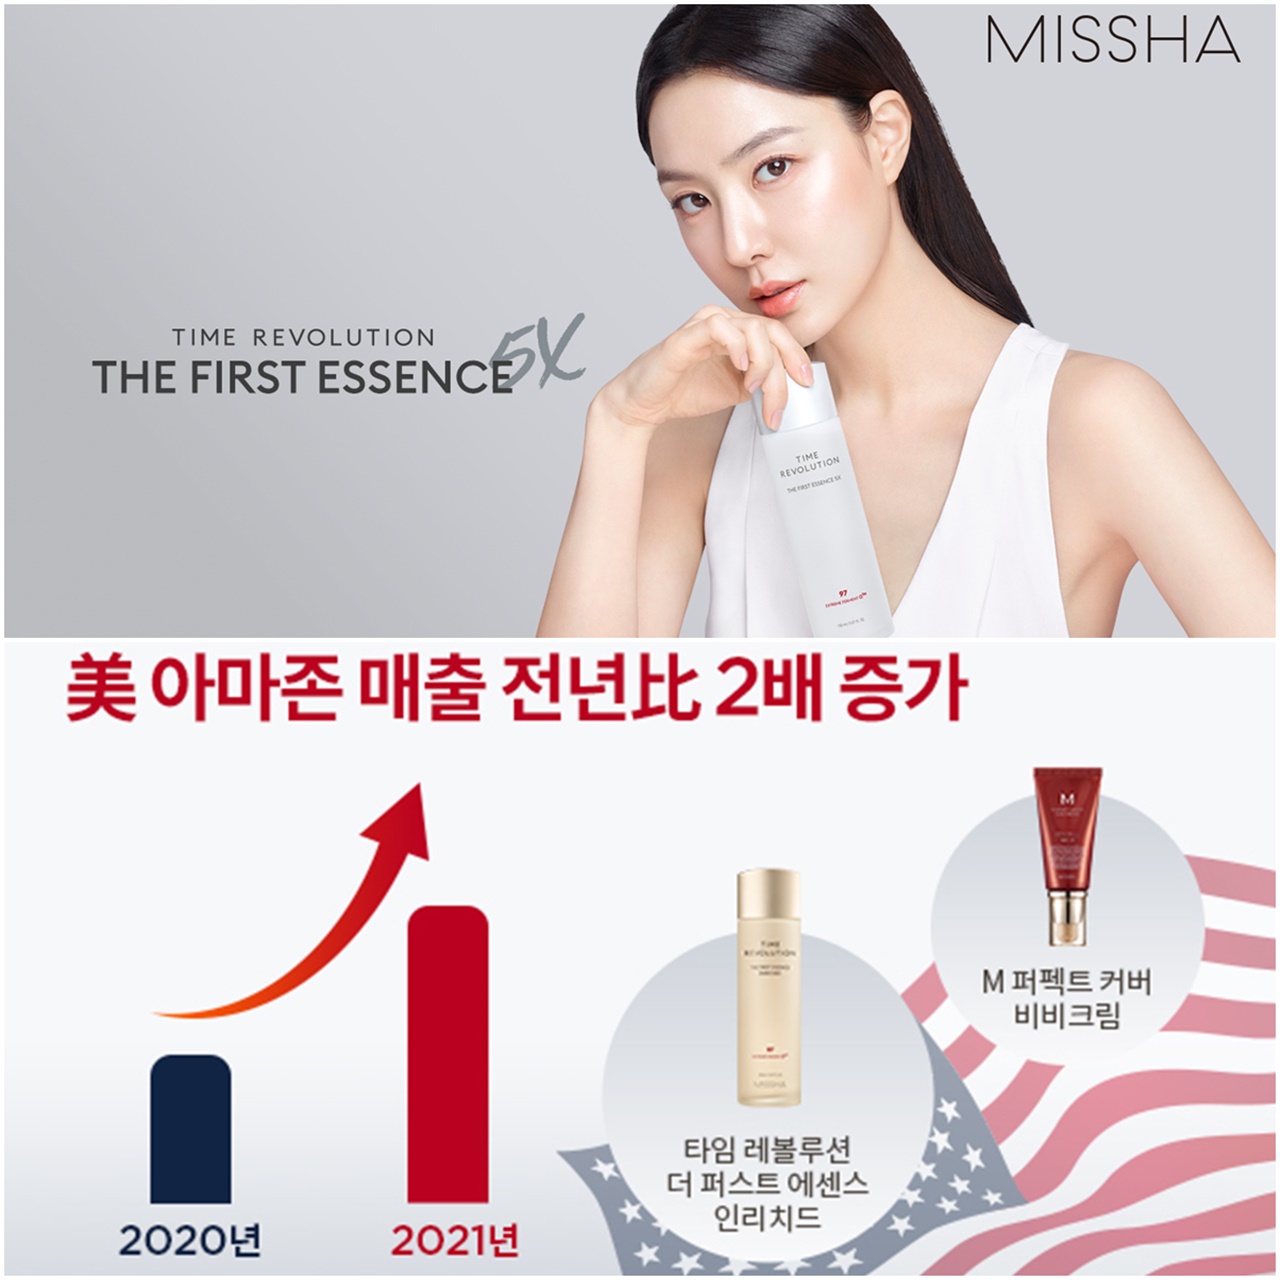 에이블씨엔씨의 대표 화장품 브랜드 미샤는 미국 최대 이커머스 채널에서 1년 만에 매출이 2배가 넘었다고 밝혔다. 사진=에이블씨엔씨